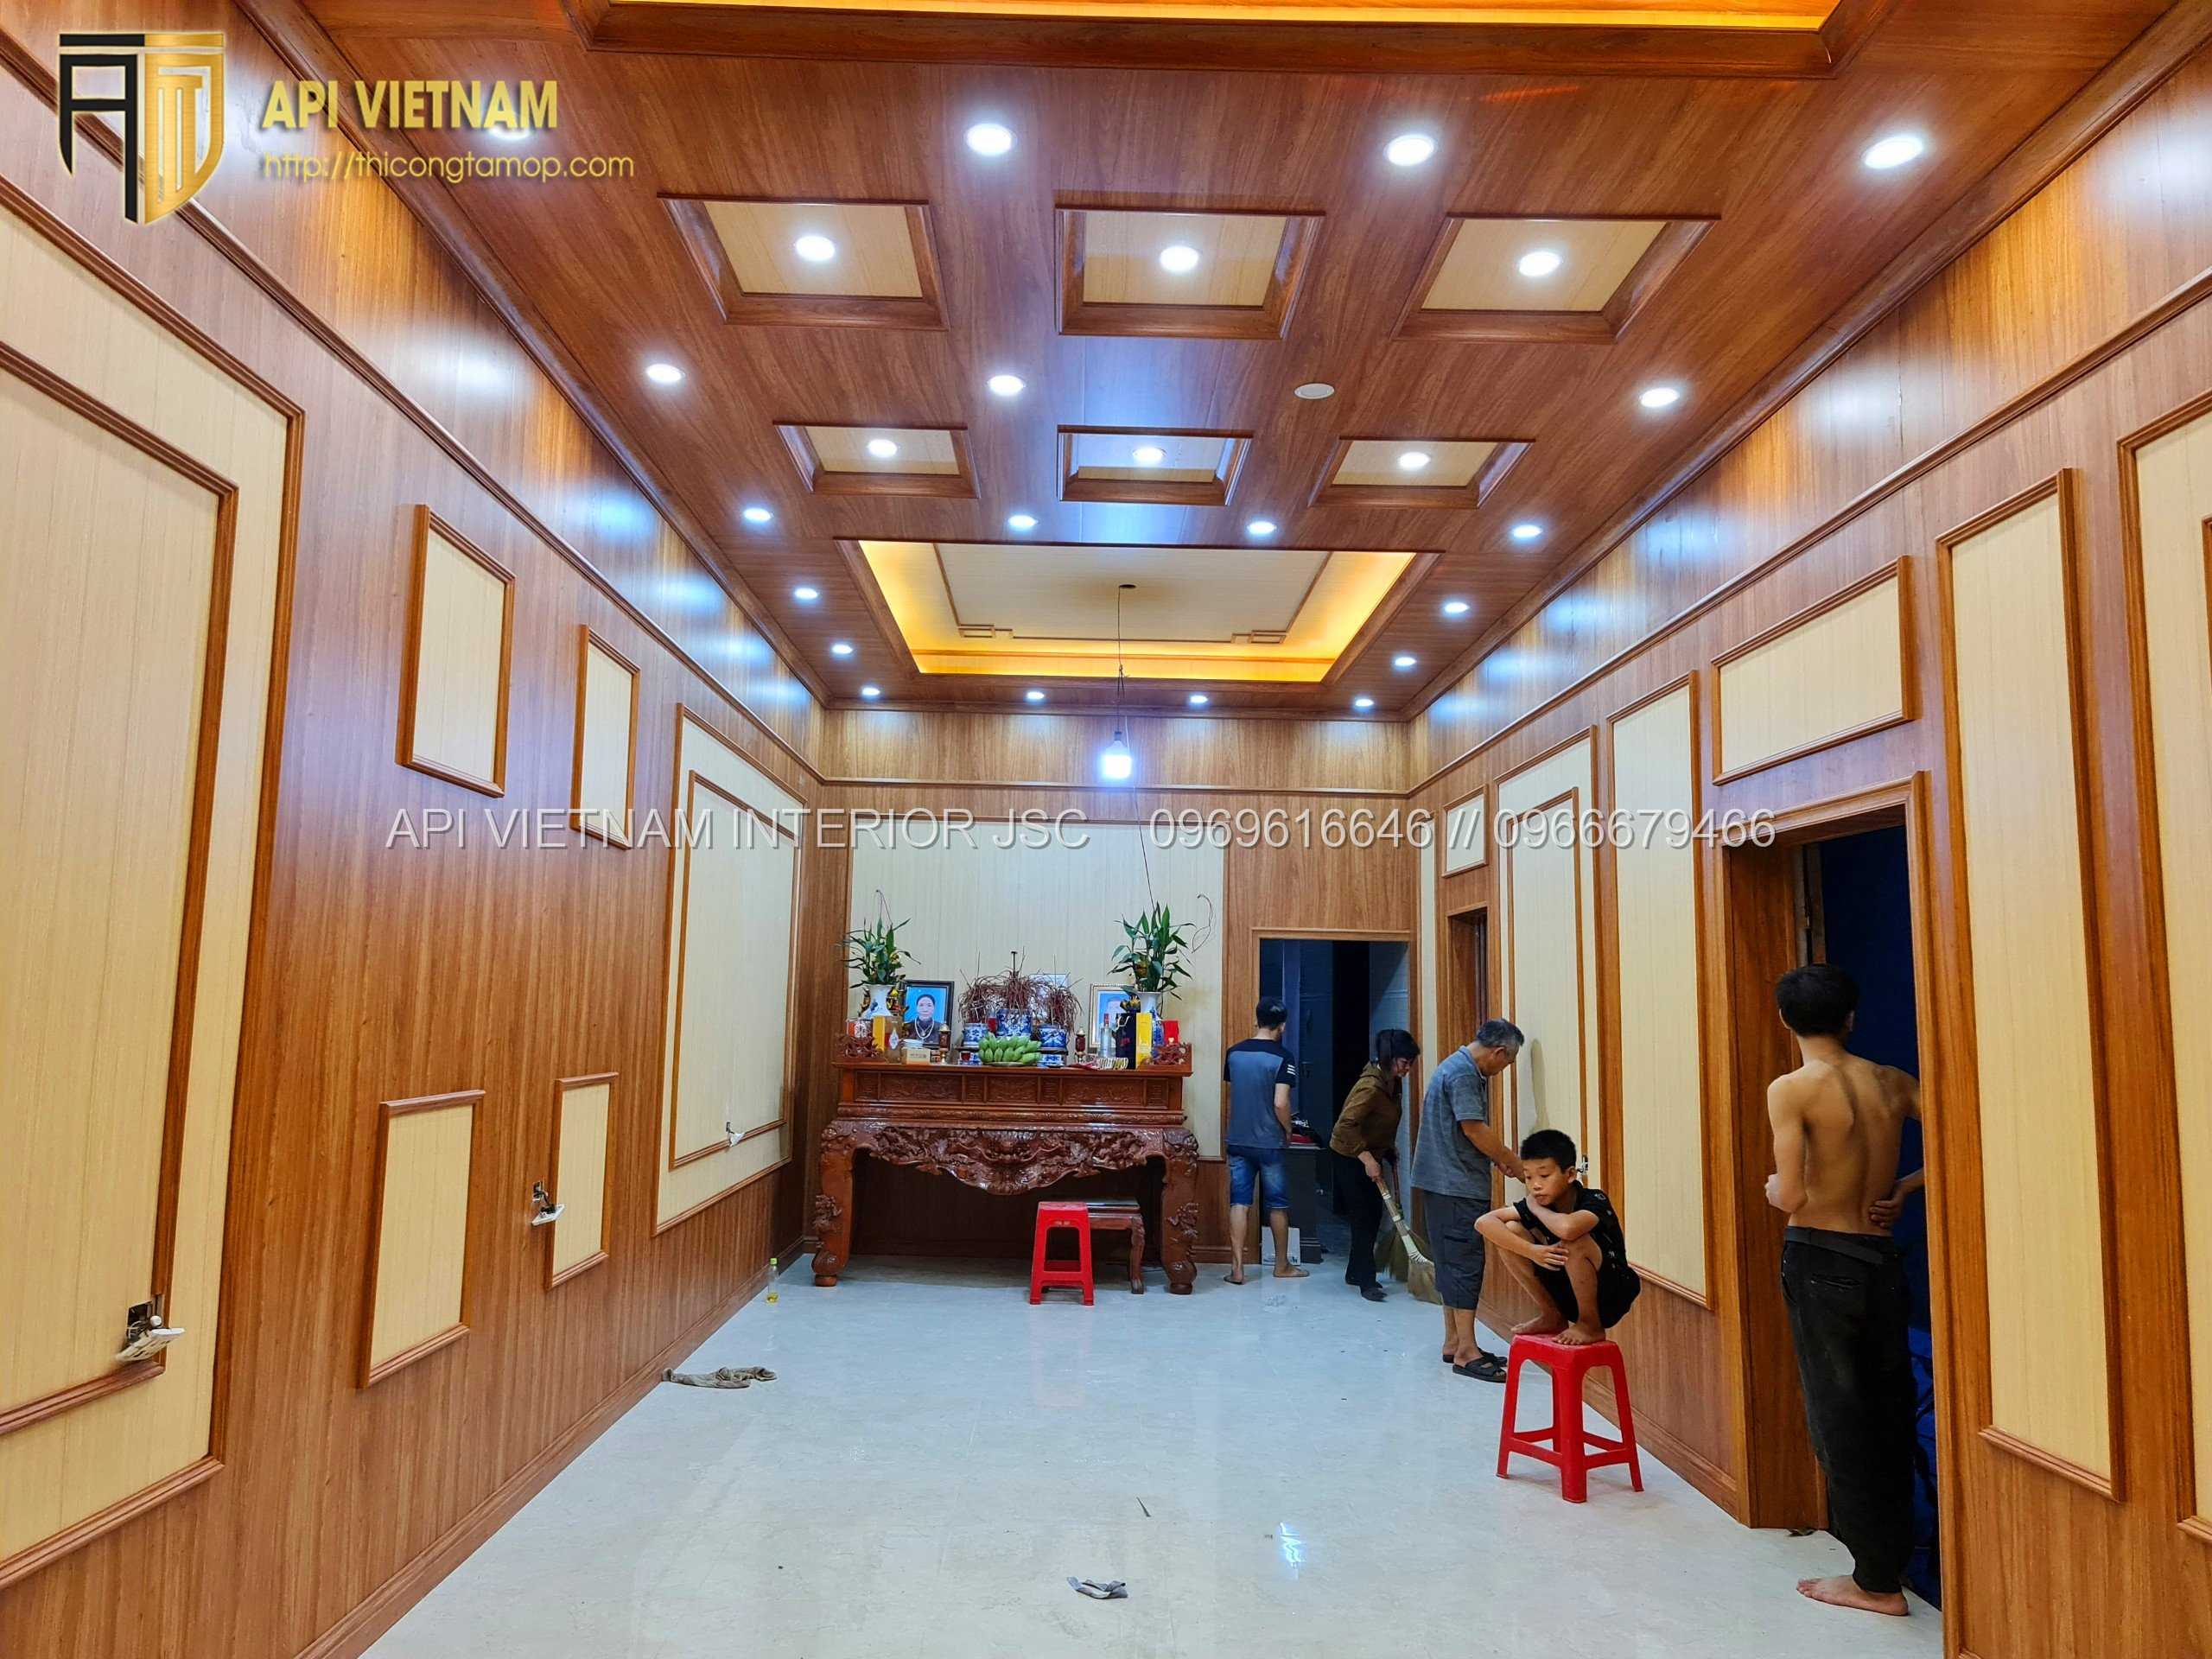 Thi công tấm ốp tường trần PVC Nano: Công trình nhà ở thanh miệu, hải dương 2 - API Việt Nam